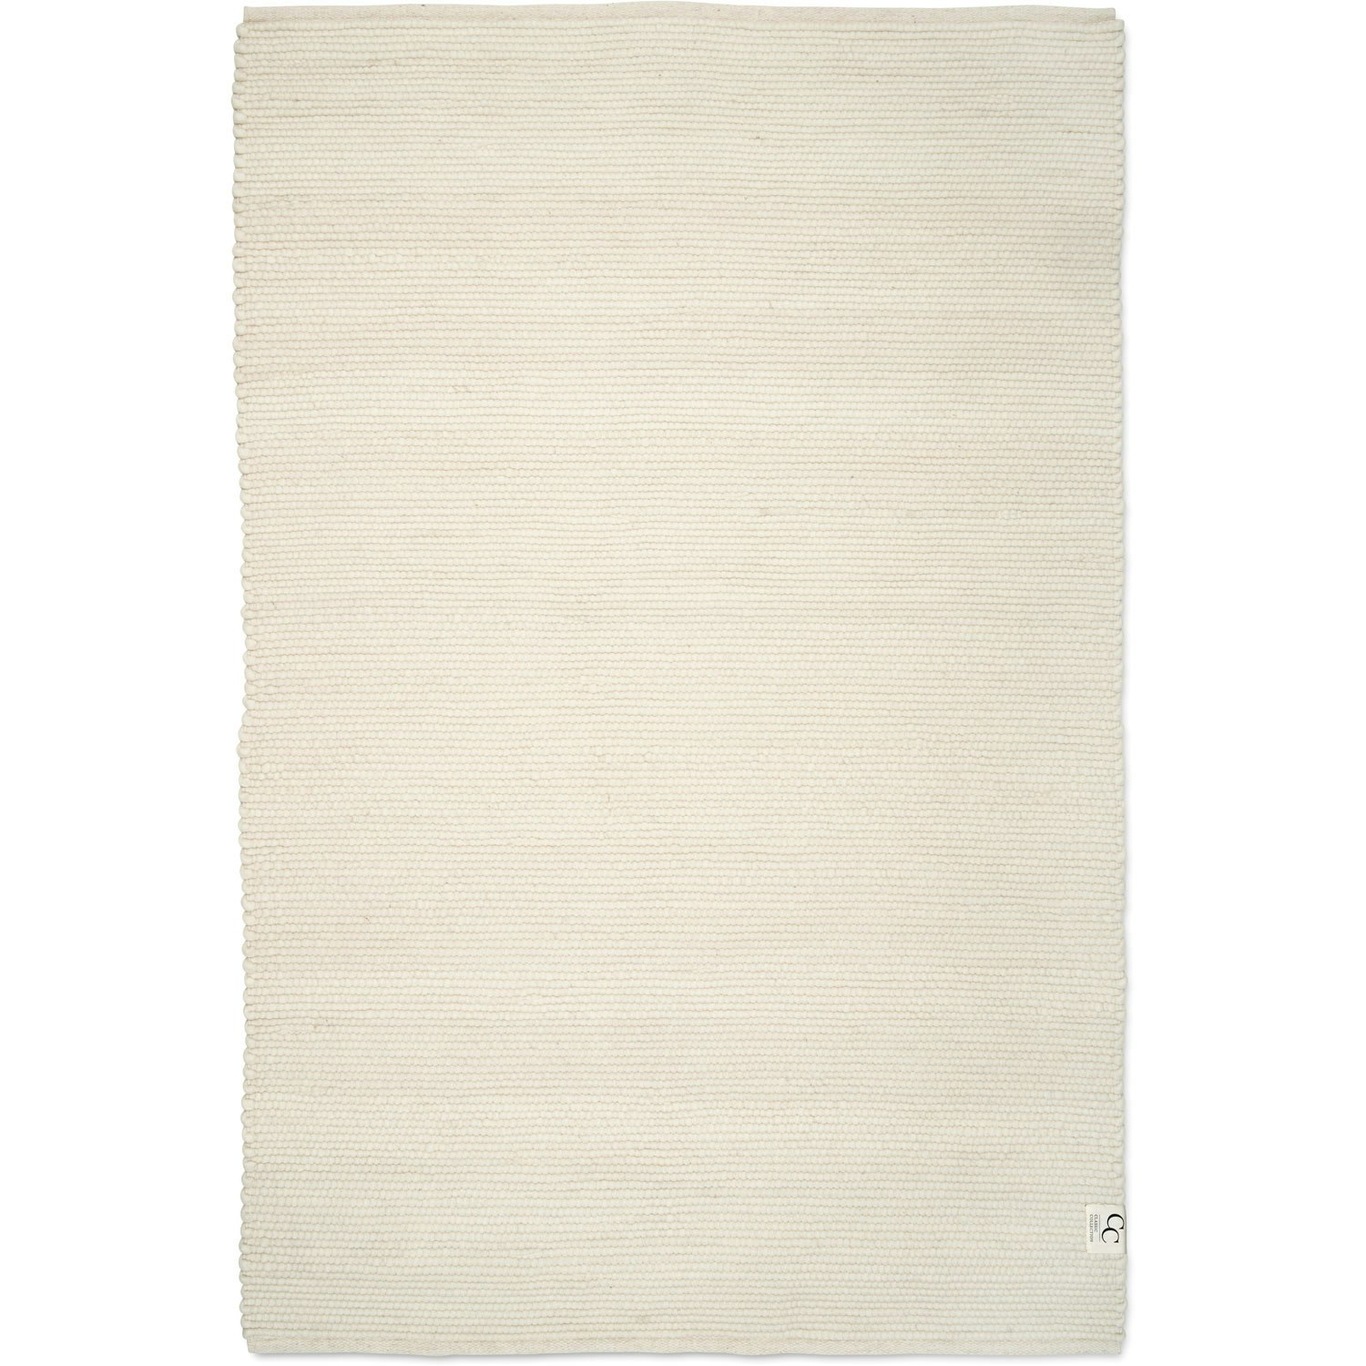 Merino Teppich 170x230 cm, Weiß